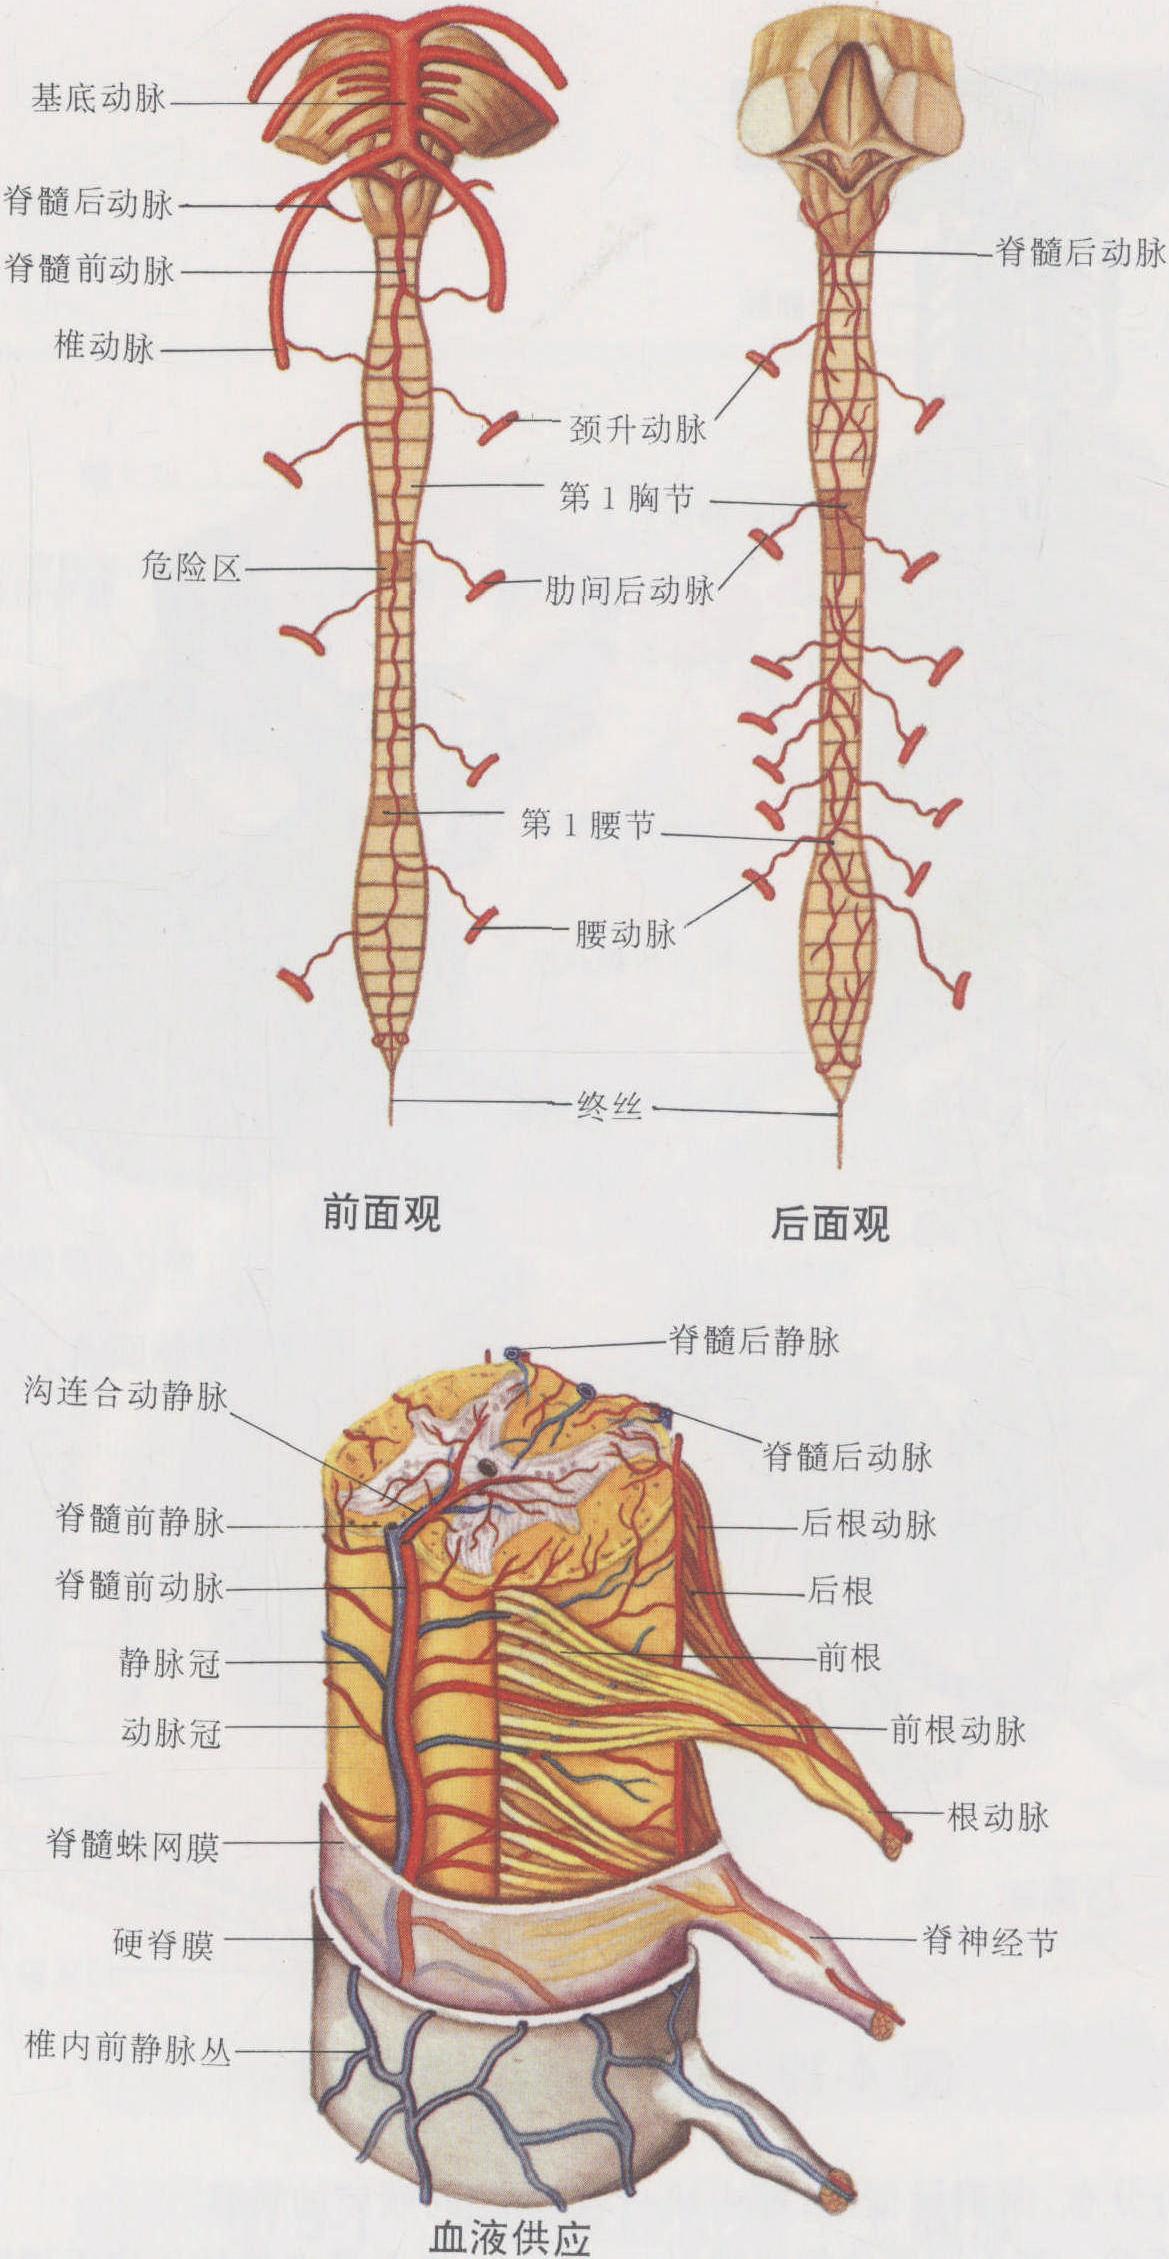 图4-18 脊髓的血管模式图